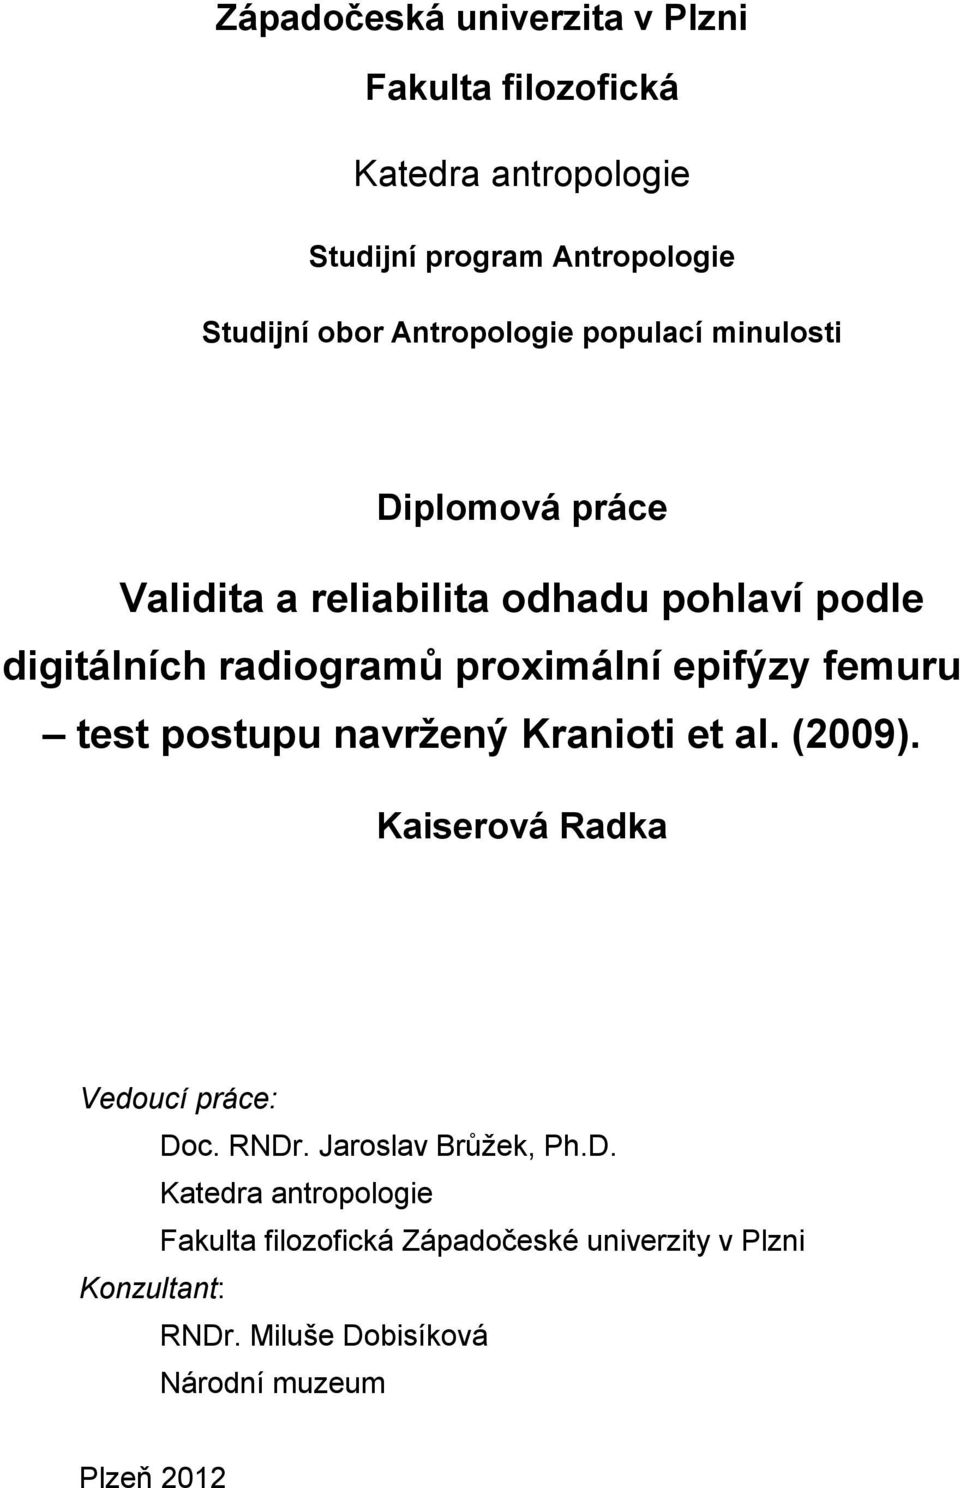 epifýzy femuru test postupu navržený Kranioti et al. (2009). Kaiserová Radka Vedoucí práce: Do